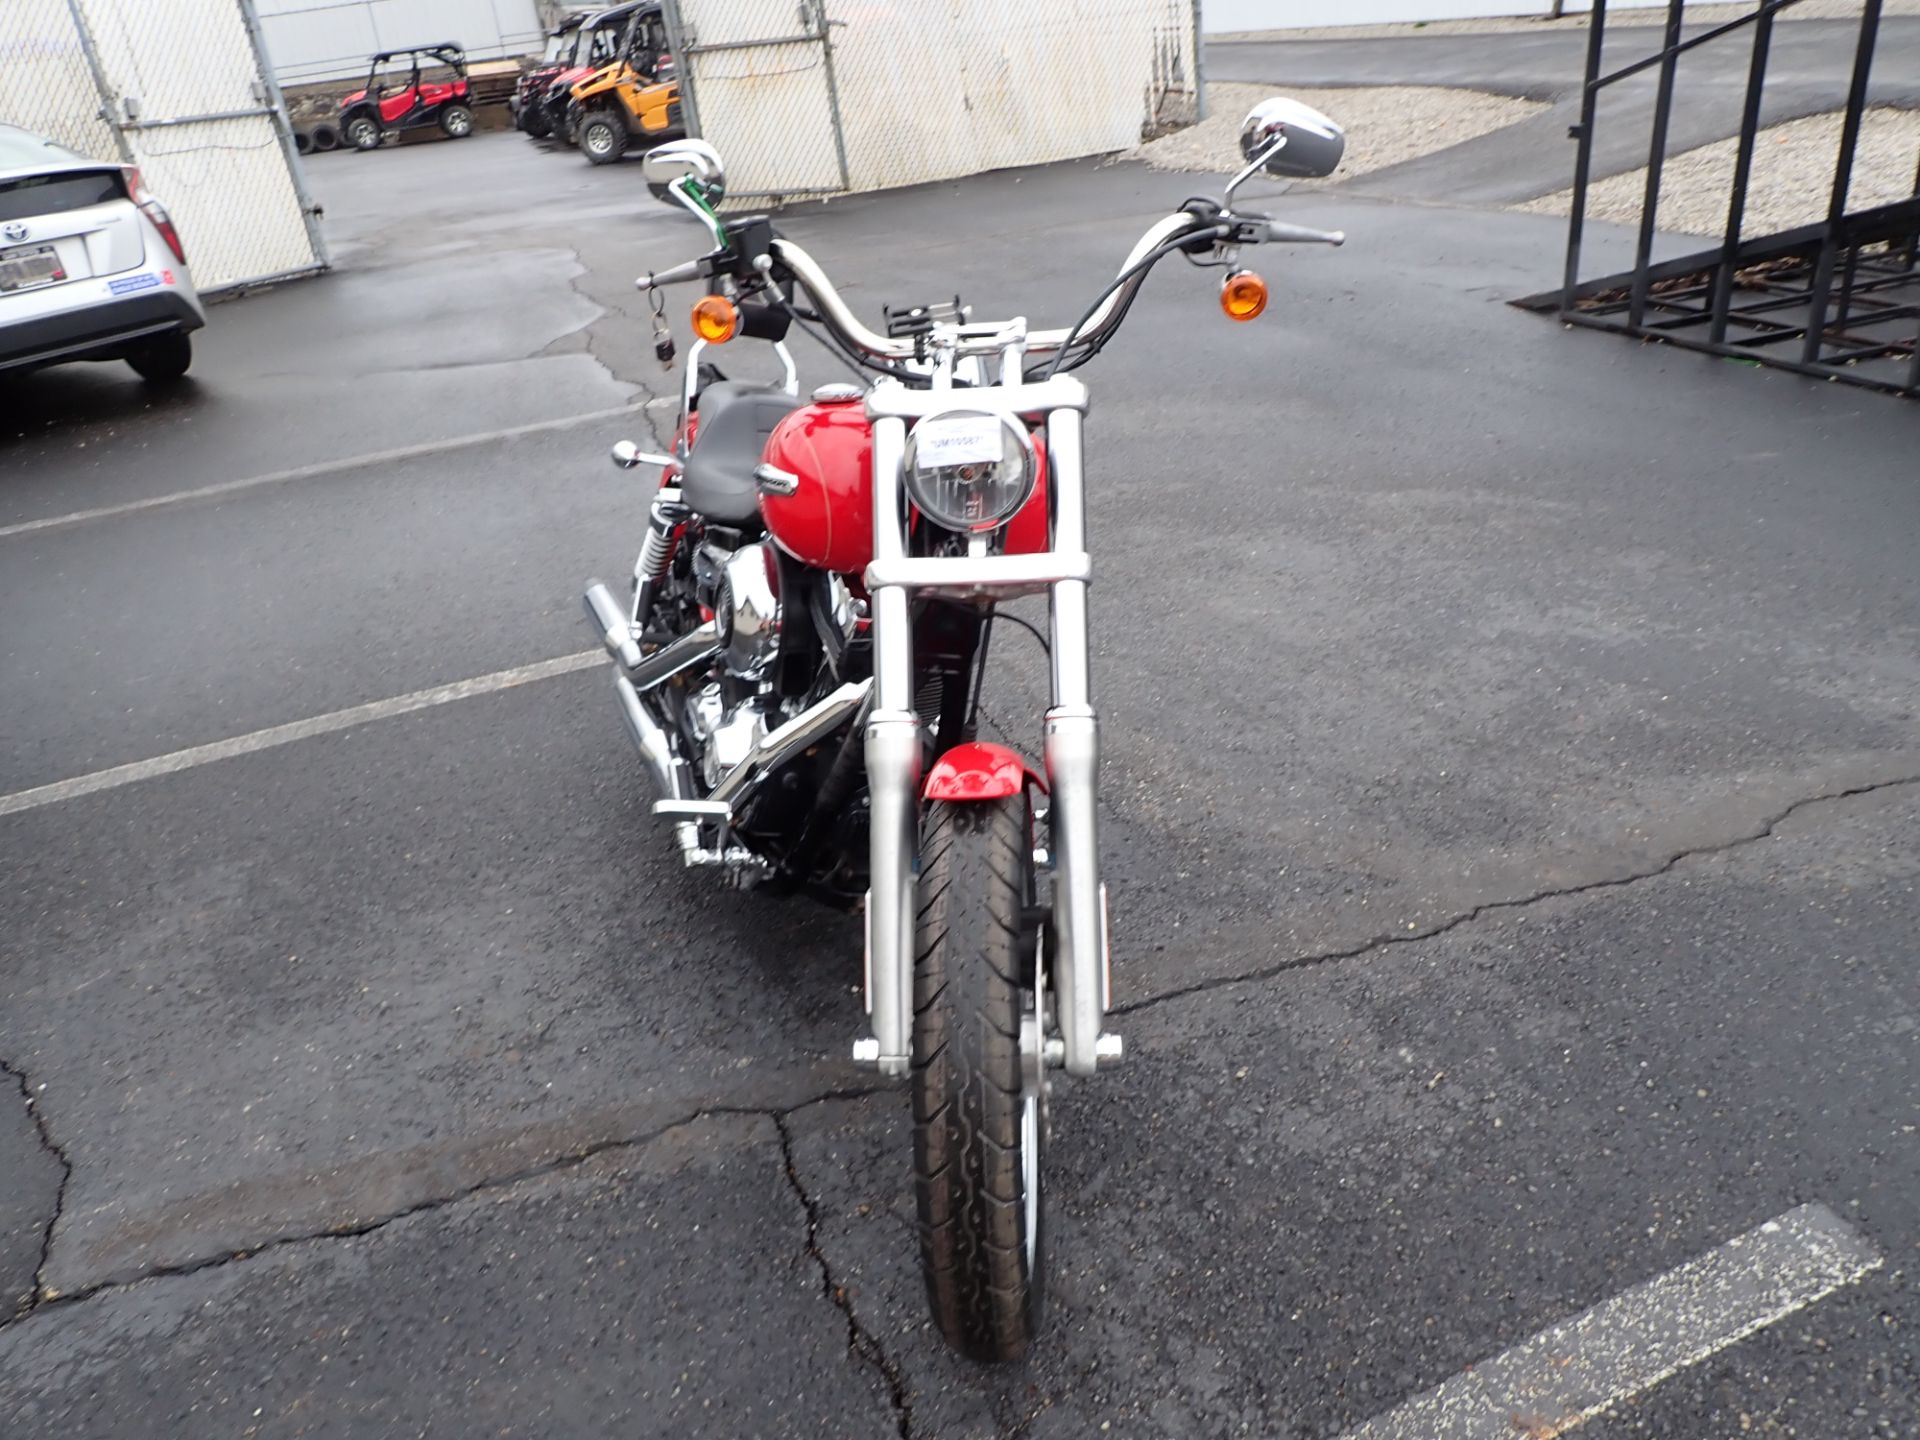 2010 Harley-Davidson Dyna® Super Glide® Custom in Massillon, Ohio - Photo 11